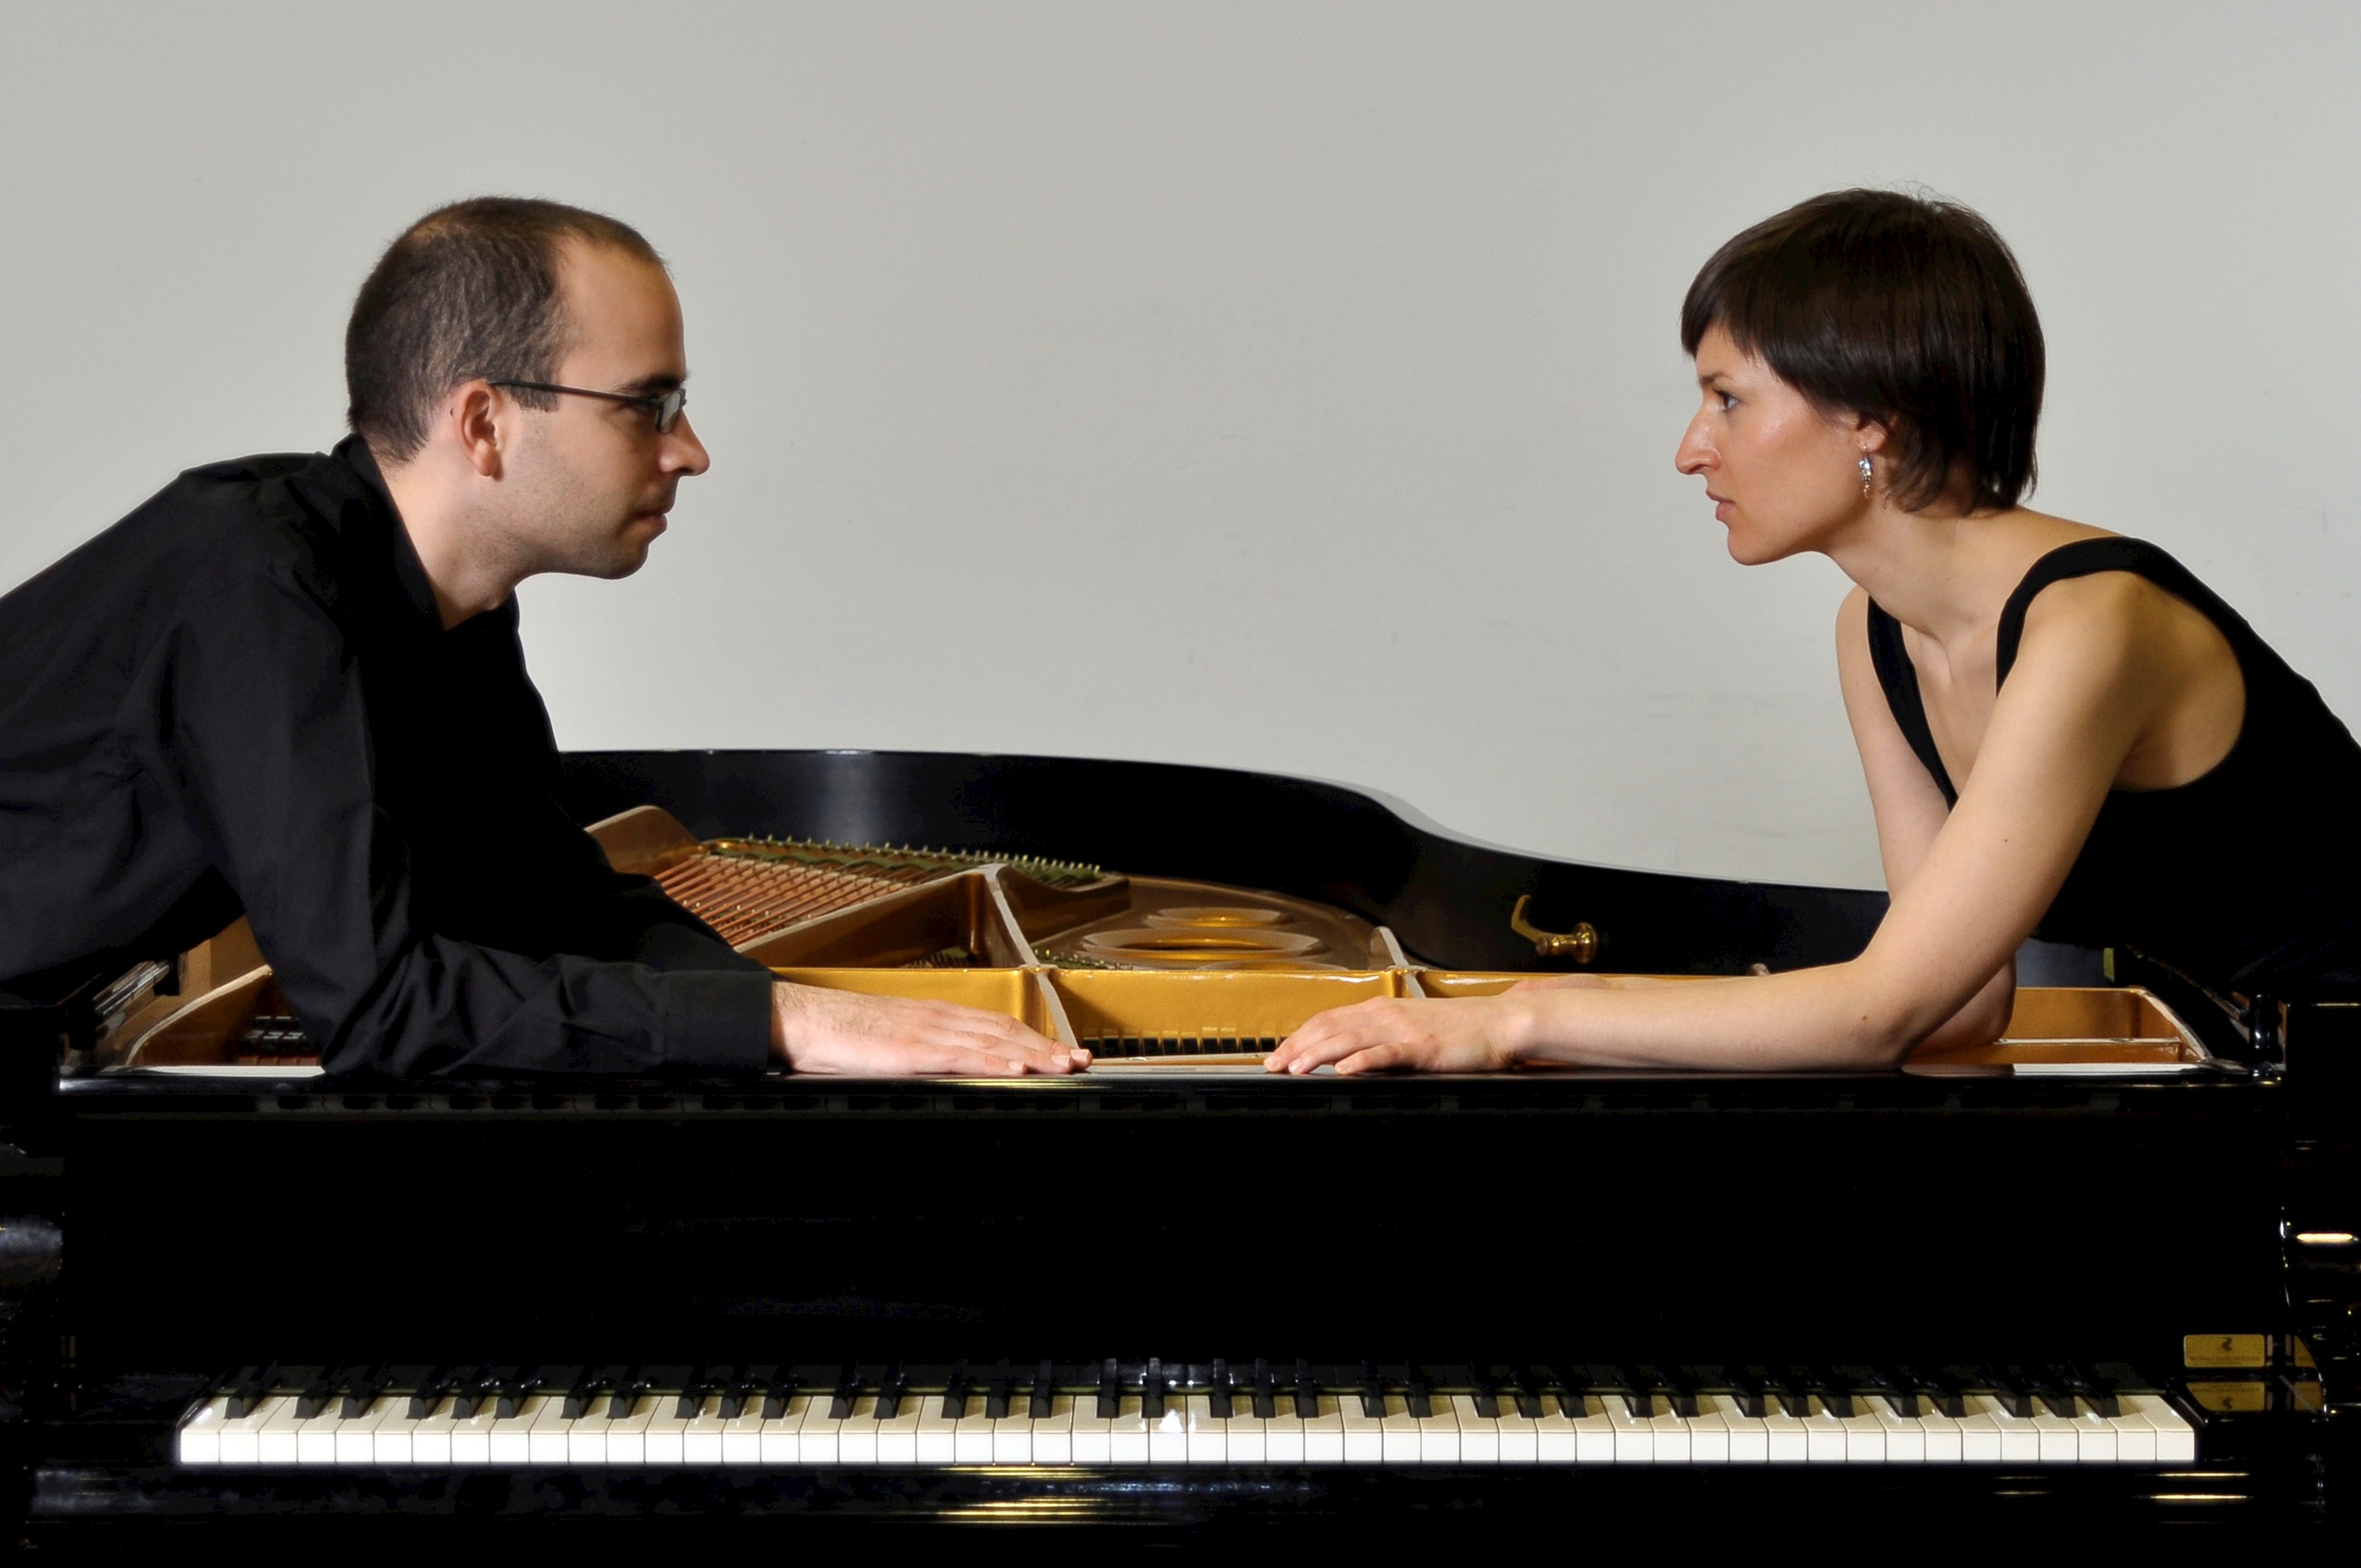 Das Klavierduo Jost Costa gastiert am 7. Mai auf Schloss Höchstädt mit ausgewählten Werken von Claude Debussy, Francis Poulenc und Darius Milhaud.